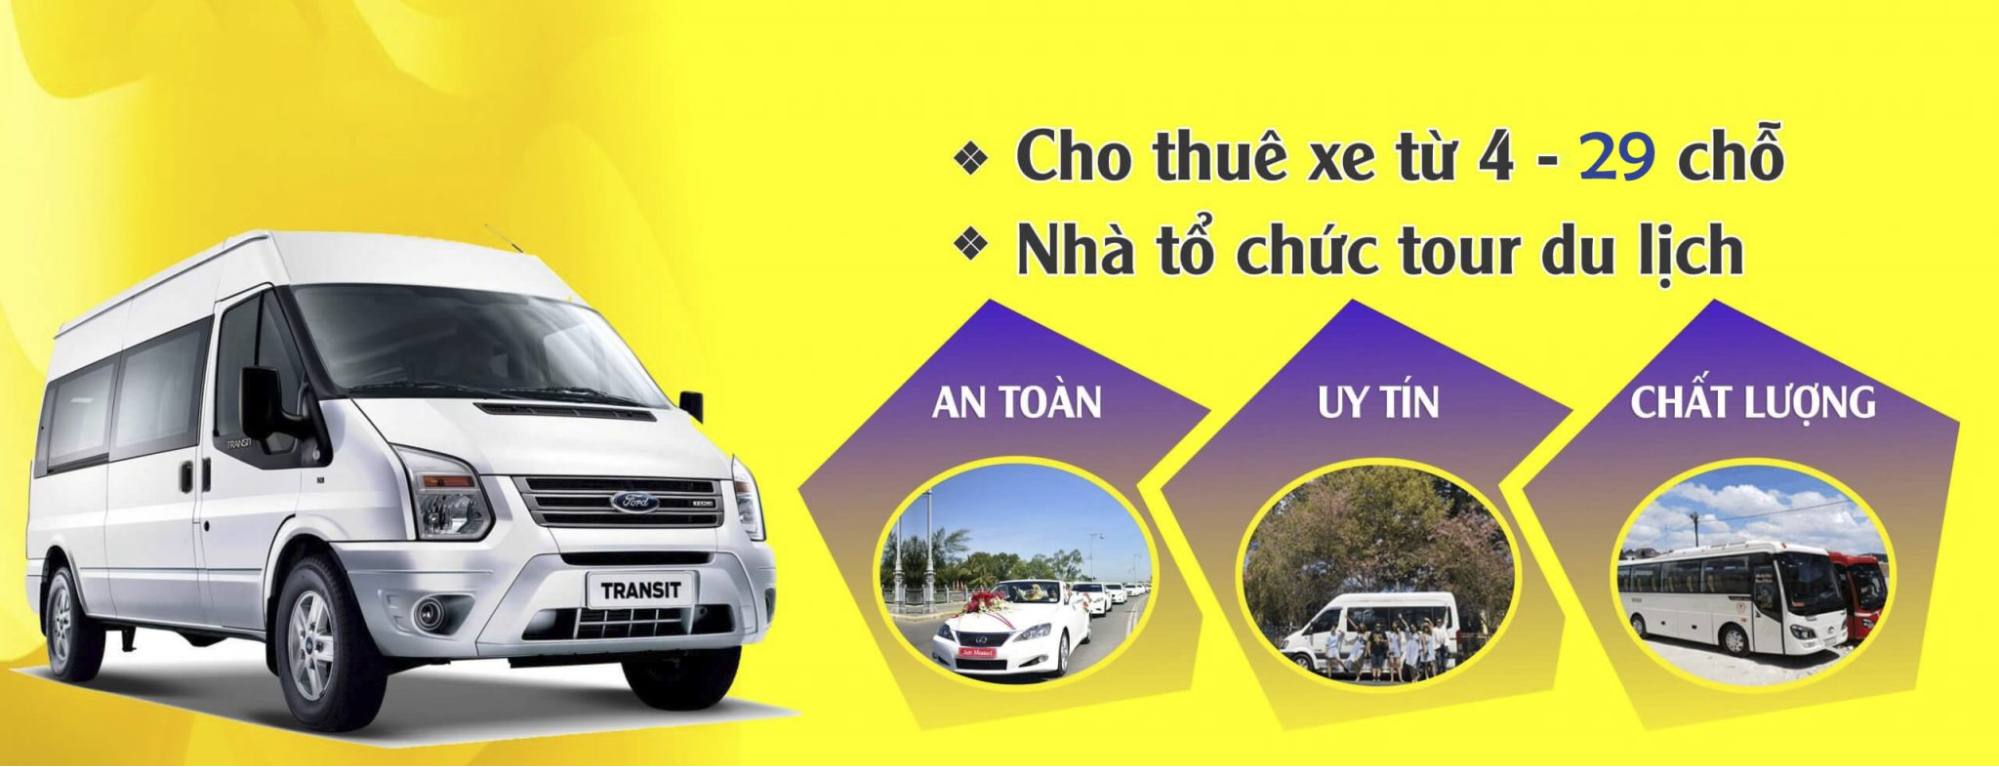 Nguyễn Ly Travel